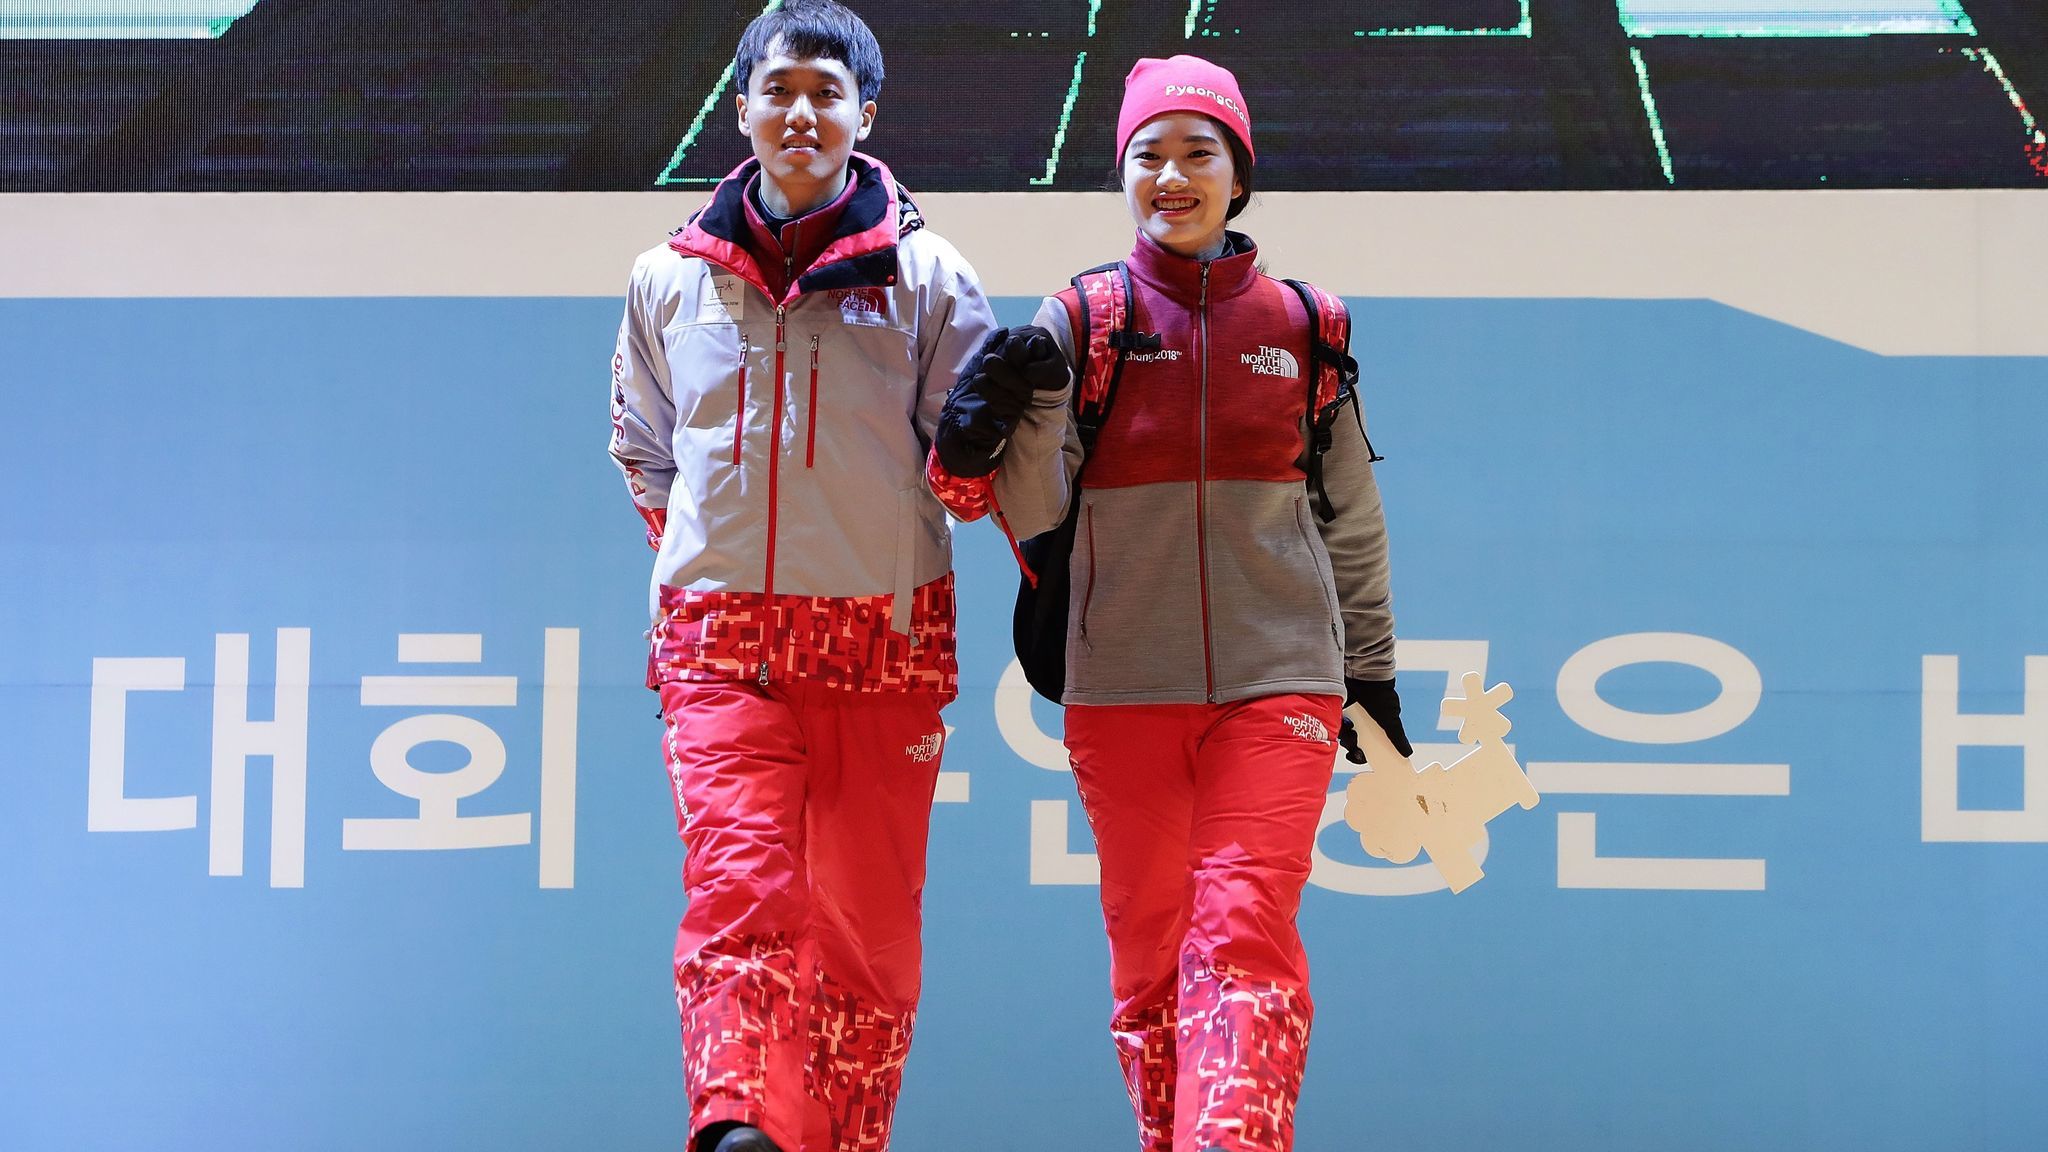 Спустя три десятилетия в Южной Корее запланирована еще одна Олимпиада - Зимние игры 2018 года, которые пройдут в высокогорных деревнях в 80 милях к востоку от Сеула